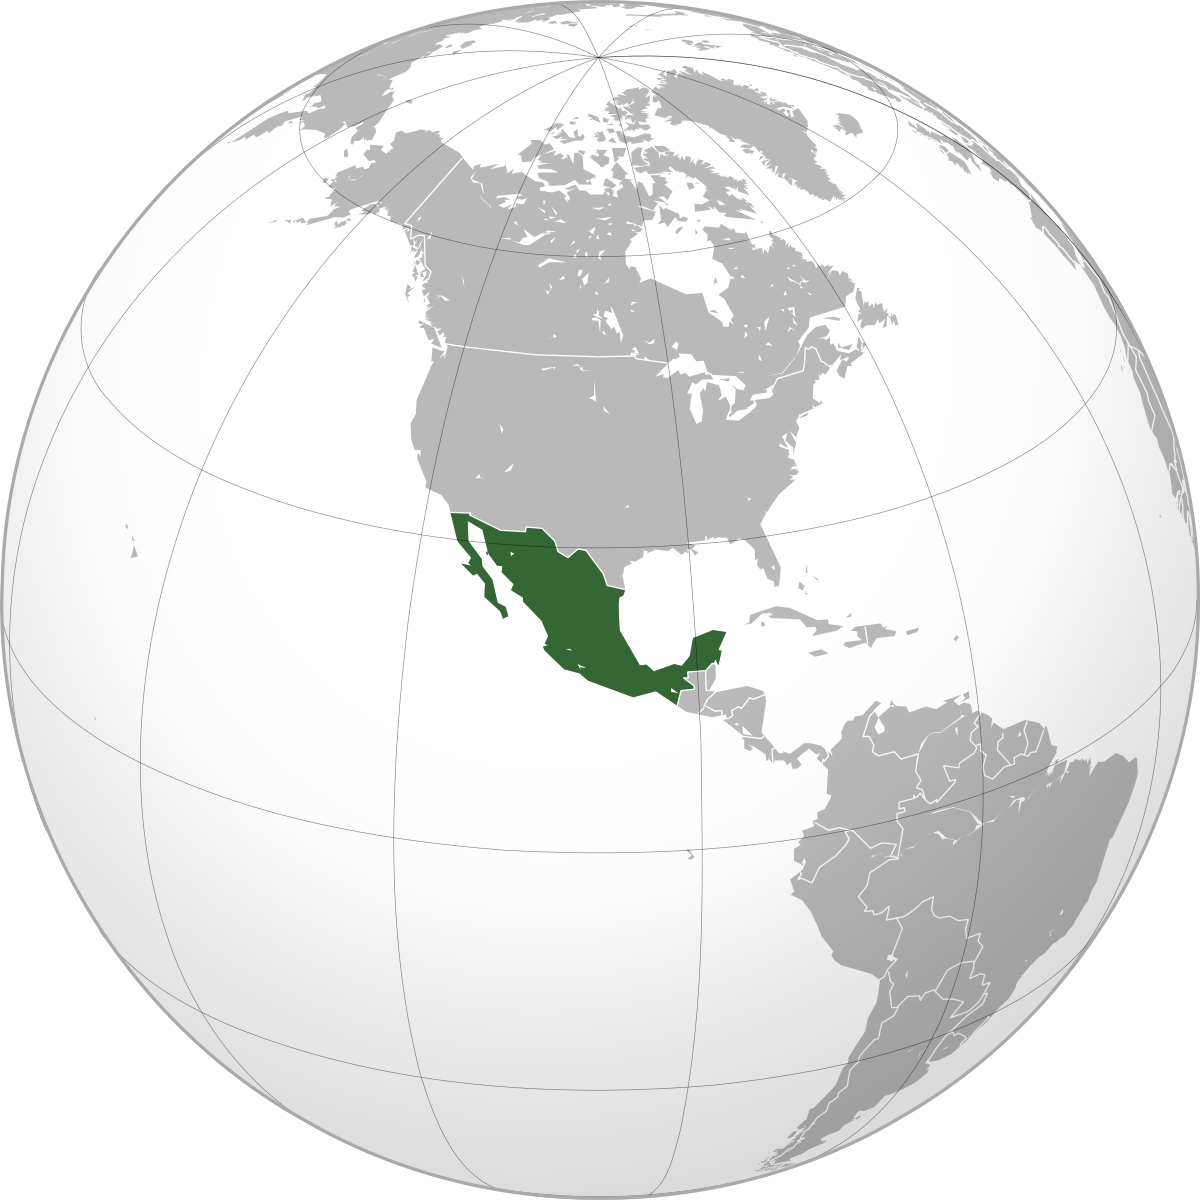 United Central Mexico States Aridoamerica America South Clipart